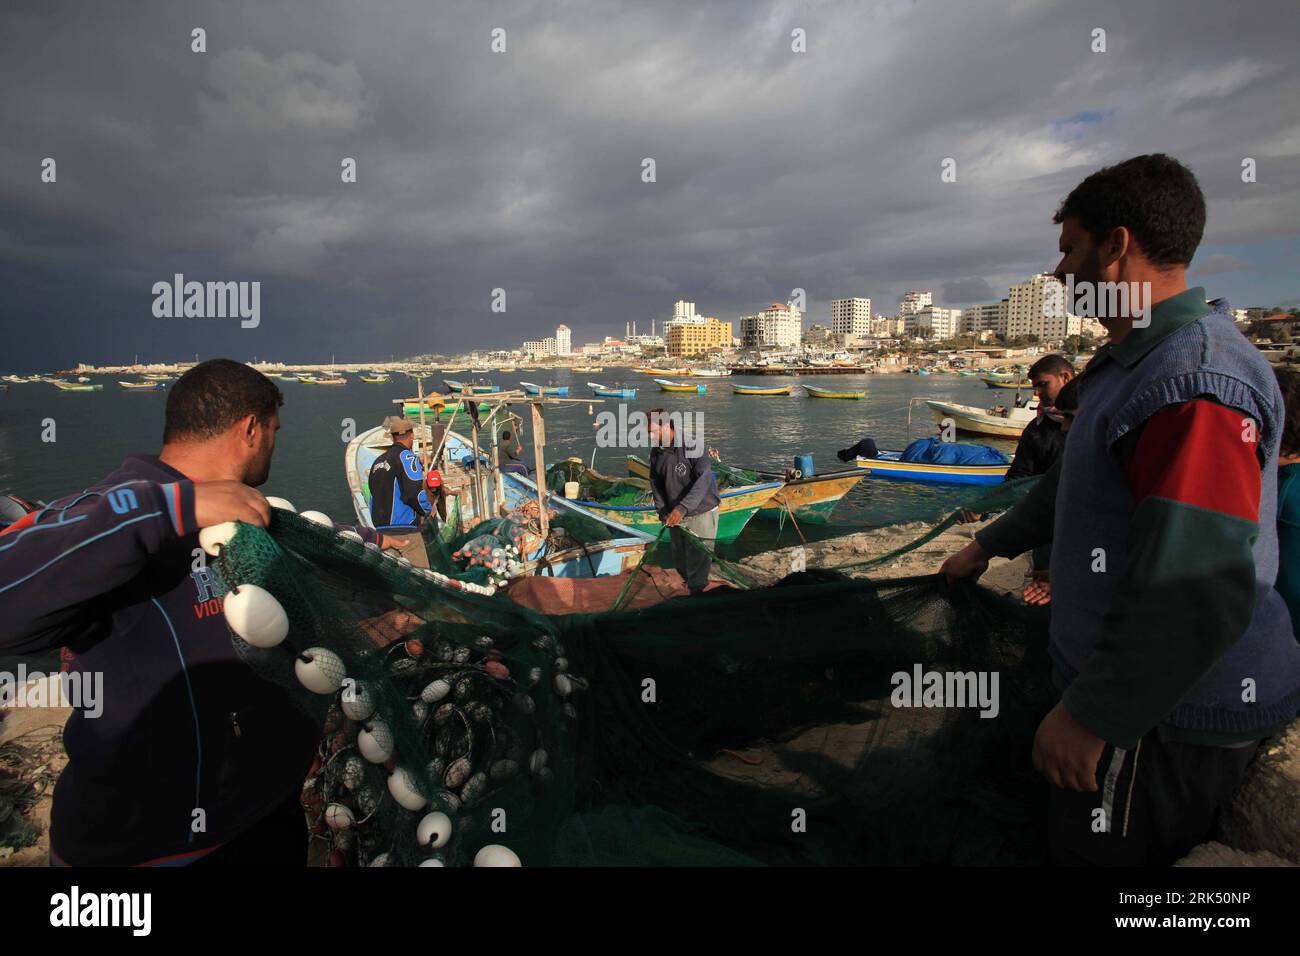 Bildnummer: 53685022  Datum: 22.12.2009  Copyright: imago/Xinhua  (091222) -- GAZA, Dec. 22, 2009 (Xinhua)-- Palestinian fishermen prepare their nets before starting a fishing trip in Gaza s Mediterranean water Dec. 22, 2009. Five Palestinian fishermen were arreested last week as Israeli navy increased restrictions on the work of the fishermen.  (Xinhua/Wissam Nassar)  (zl)  (1)GAZA-PALESTINIAN FISHERMEN PUBLICATIONxNOTxINxCHN Wirtschaft Gesellschaft Fischer Fischerei kbdig xkg 2009 quer    Bildnummer 53685022 Date 22 12 2009 Copyright Imago XINHUA  Gaza DEC 22 2009 XINHUA PALESTINIAN Fisherme Stock Photo